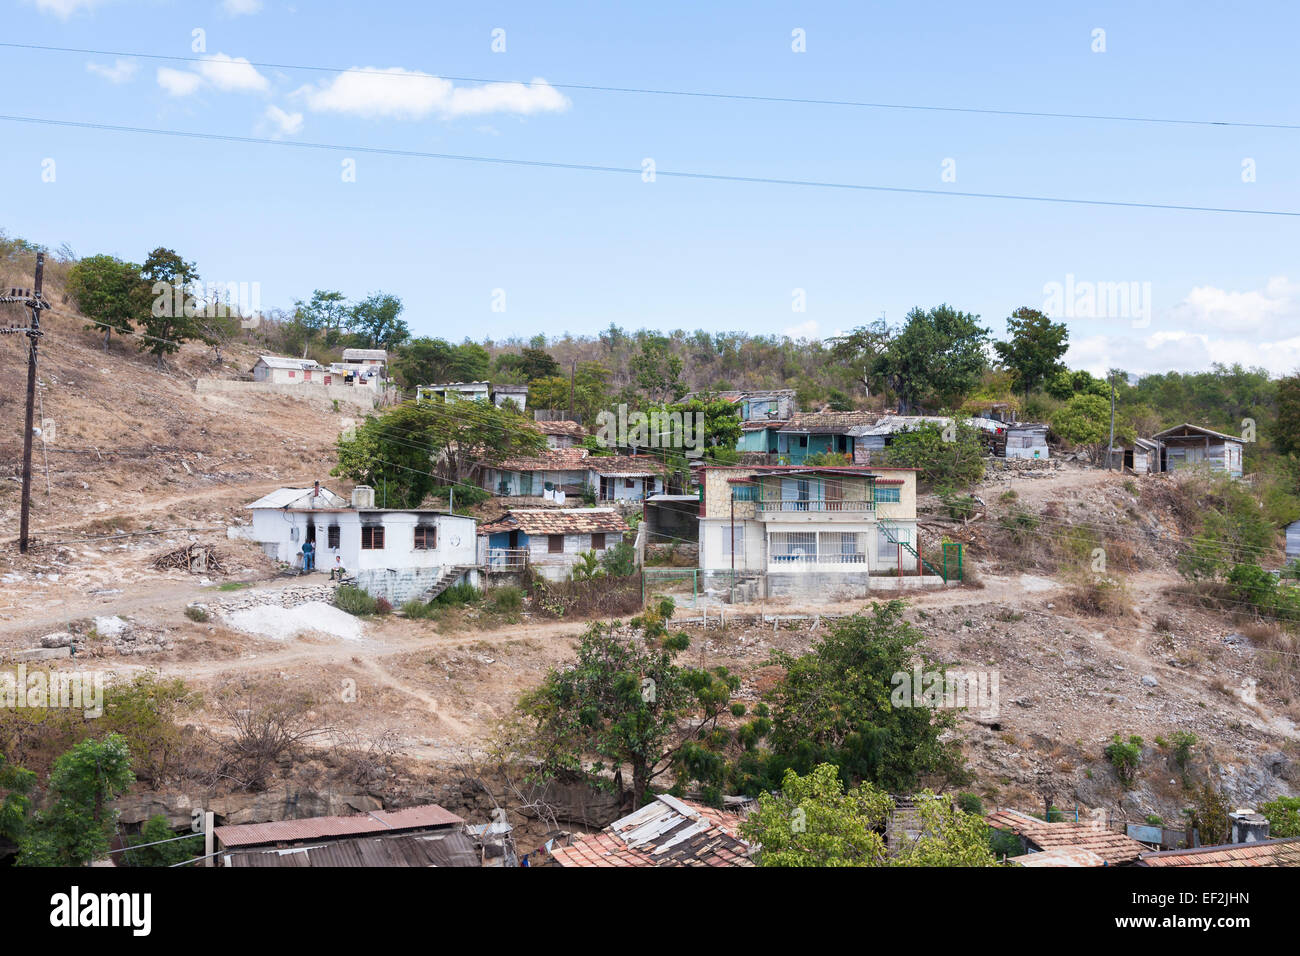 La povertà cubano lo stile di vita e il paesaggio: tipiche case fatiscenti, fattorie e baracche in un malandato povero villaggio vicino a Trinidad, Cuba Foto Stock